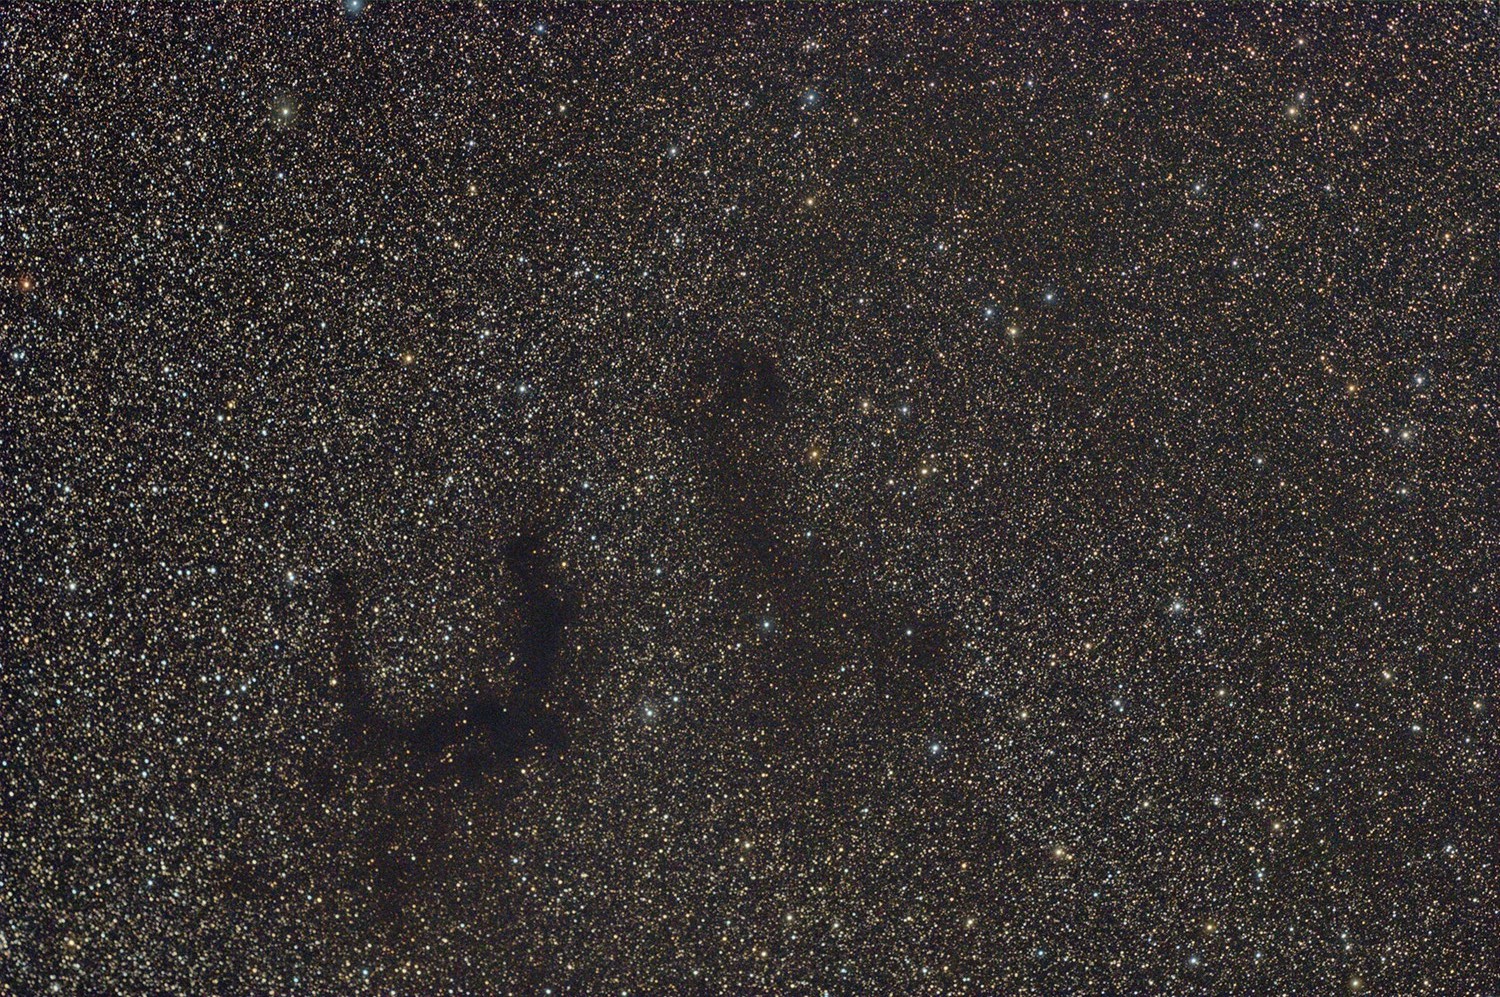 Barnard 142/143, 2009-08-15